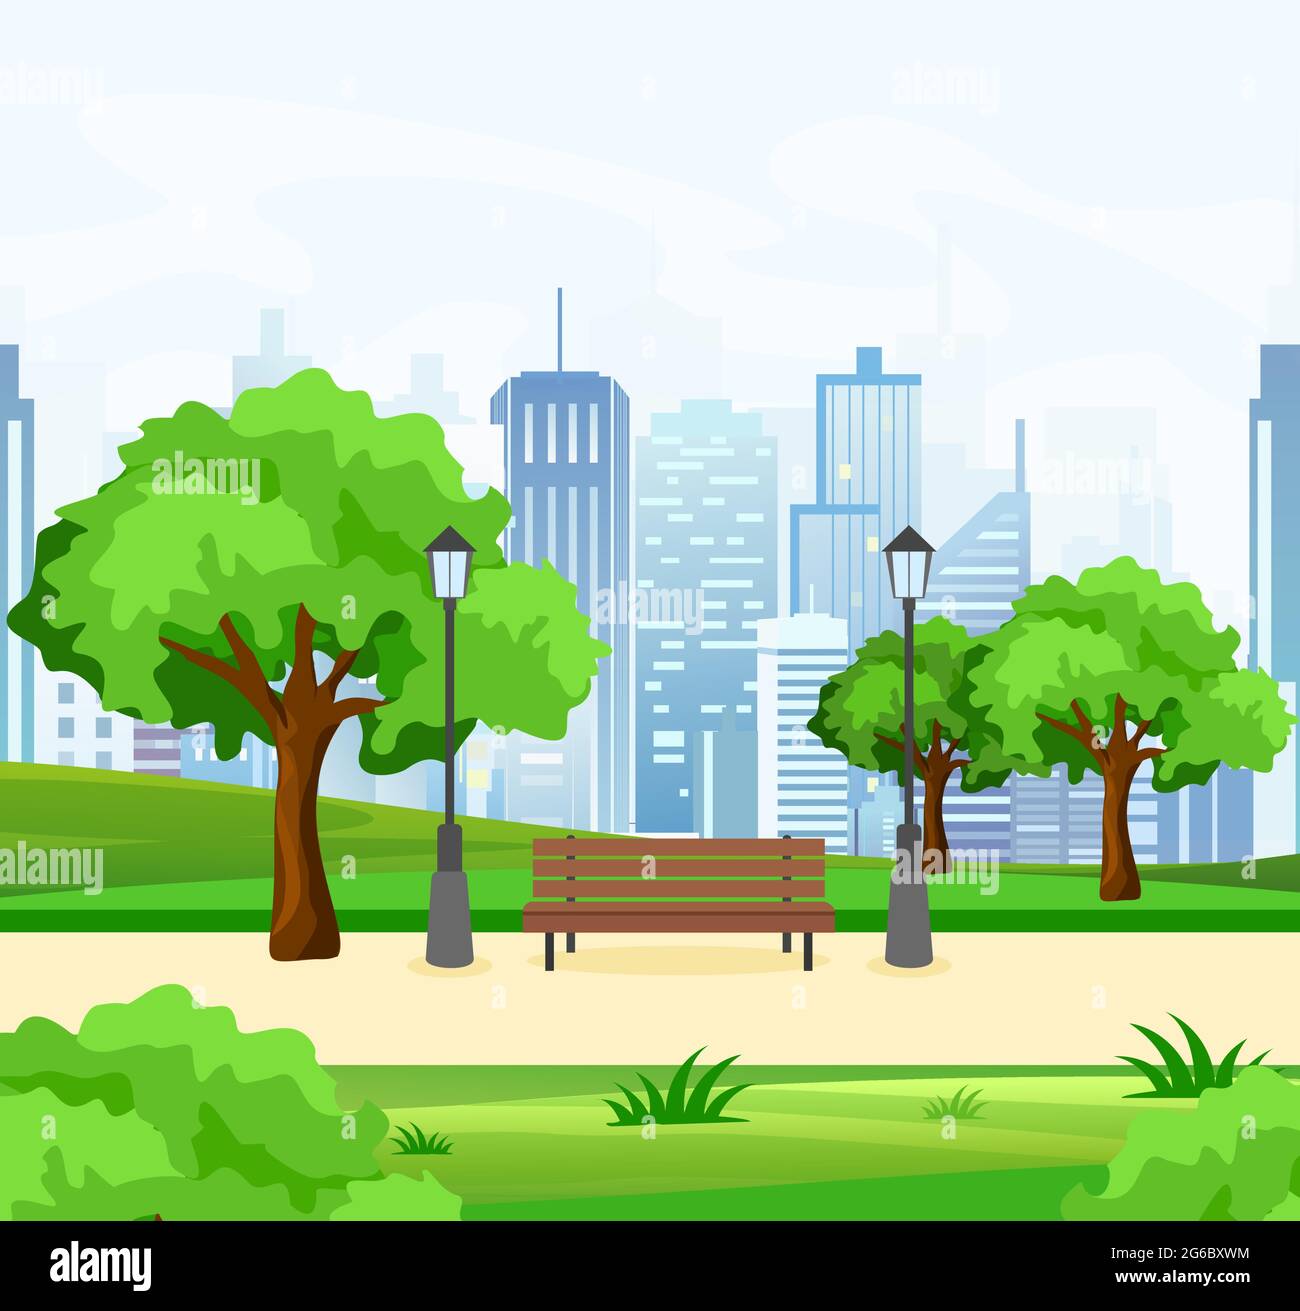 Vektor-Illustration von schönen öffentlichen Stadtpark mit Bäumen und Bank, Lichter und modernen Blick auf die Stadt im Hintergrund in flachem Stil. Stock Vektor